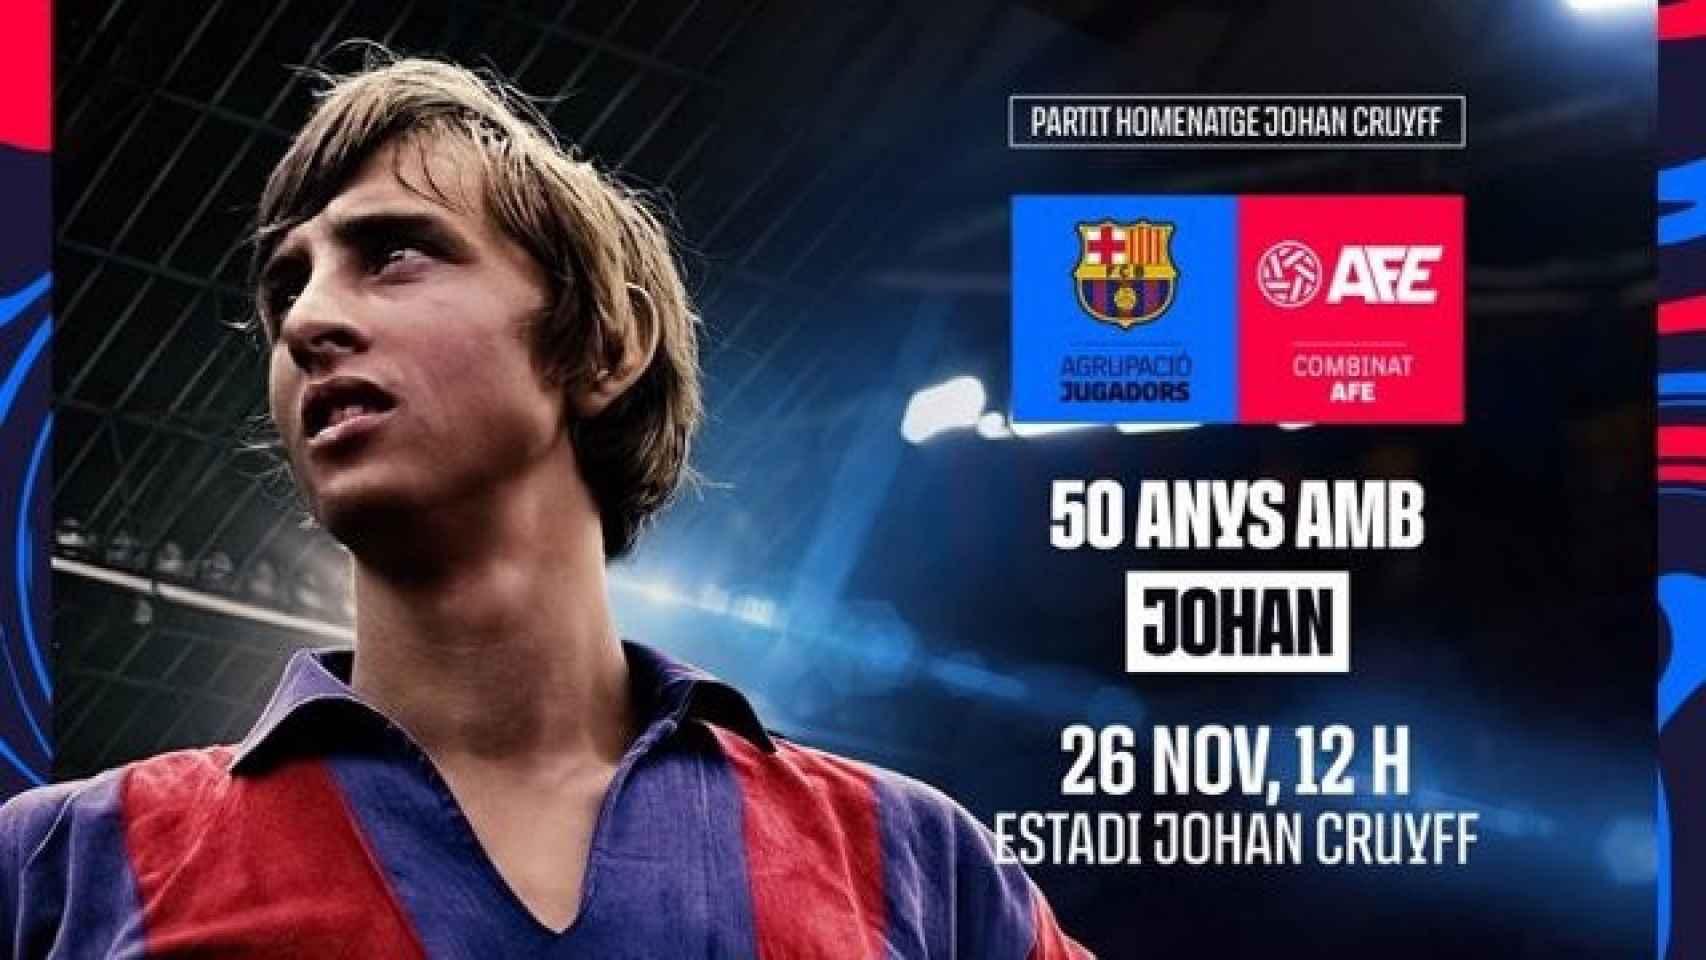 La publicidad del partido de homenaje a Johan Cruyff